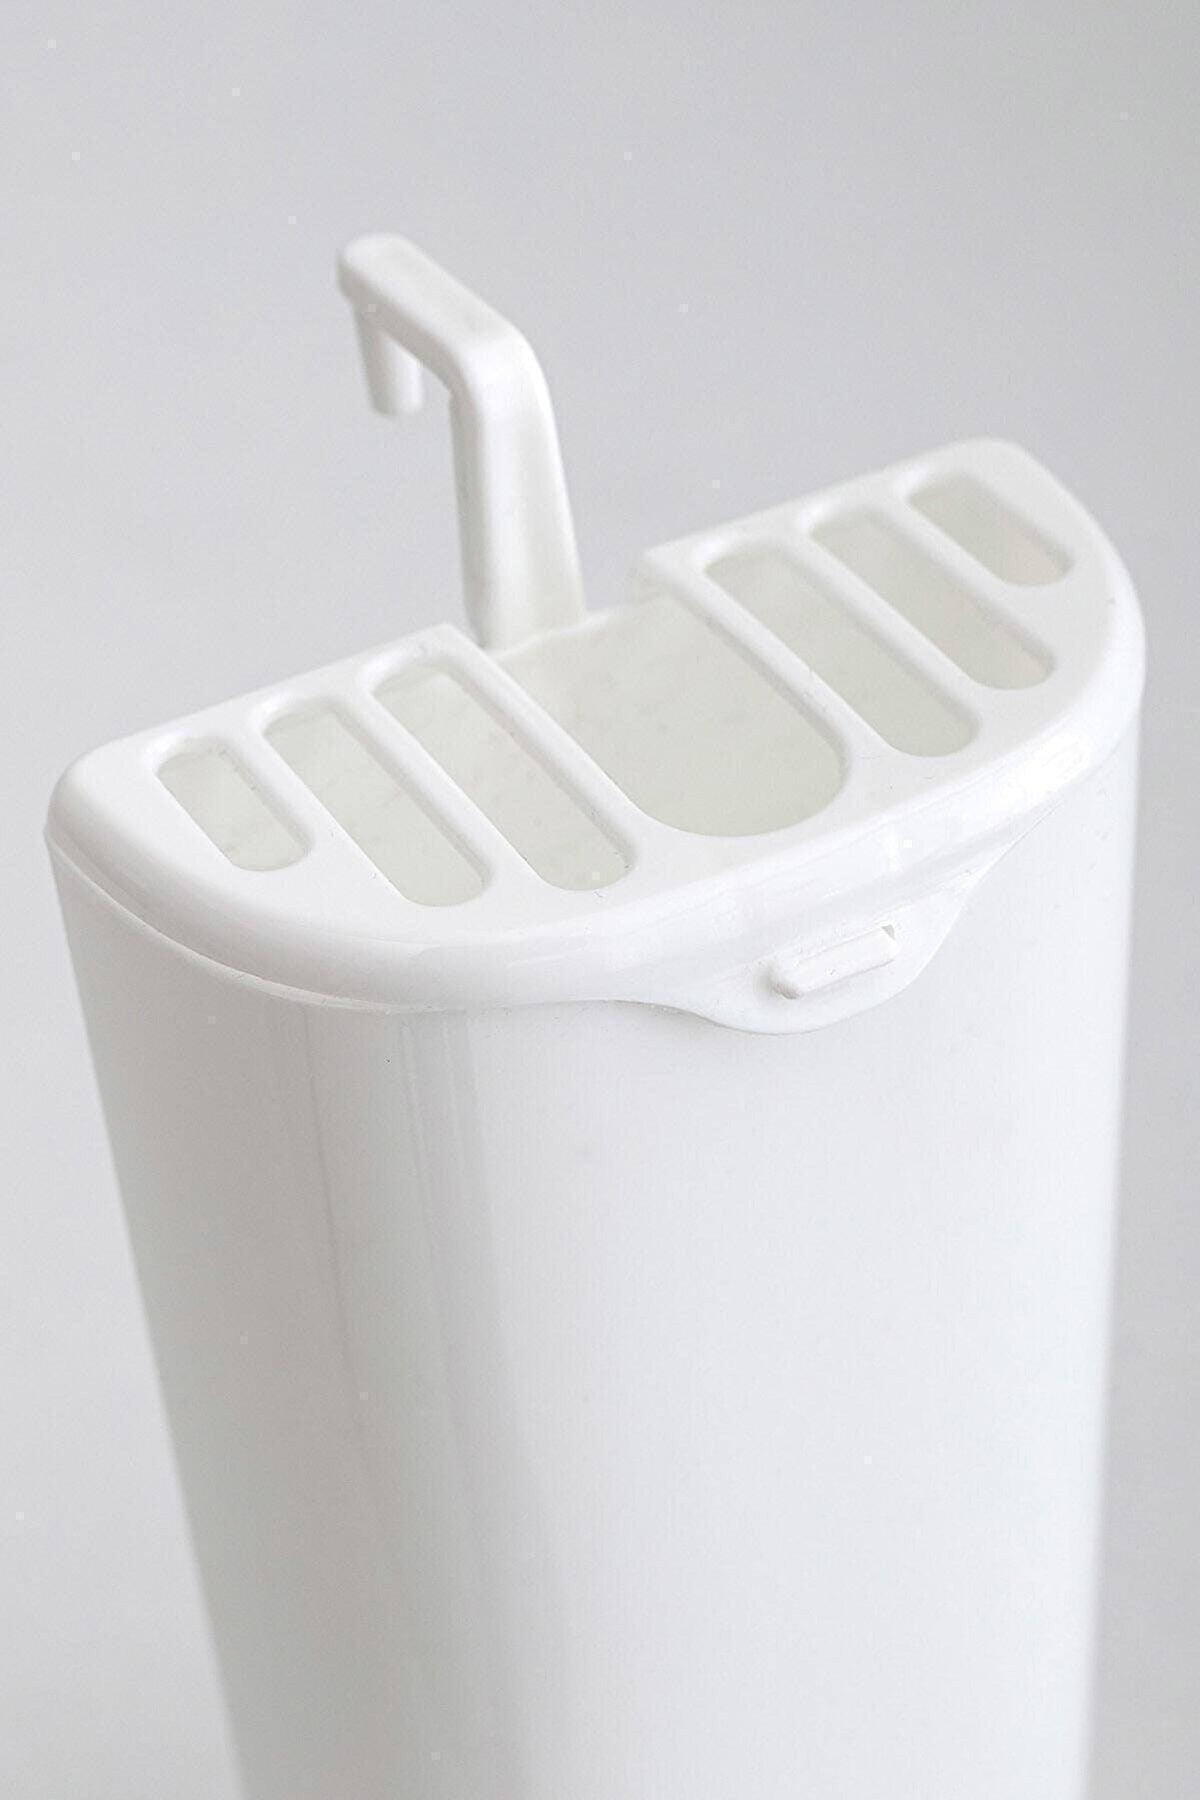 3 Pieces Panel Heating Waterer Humidifier Honeycomb Waterer - Swordslife